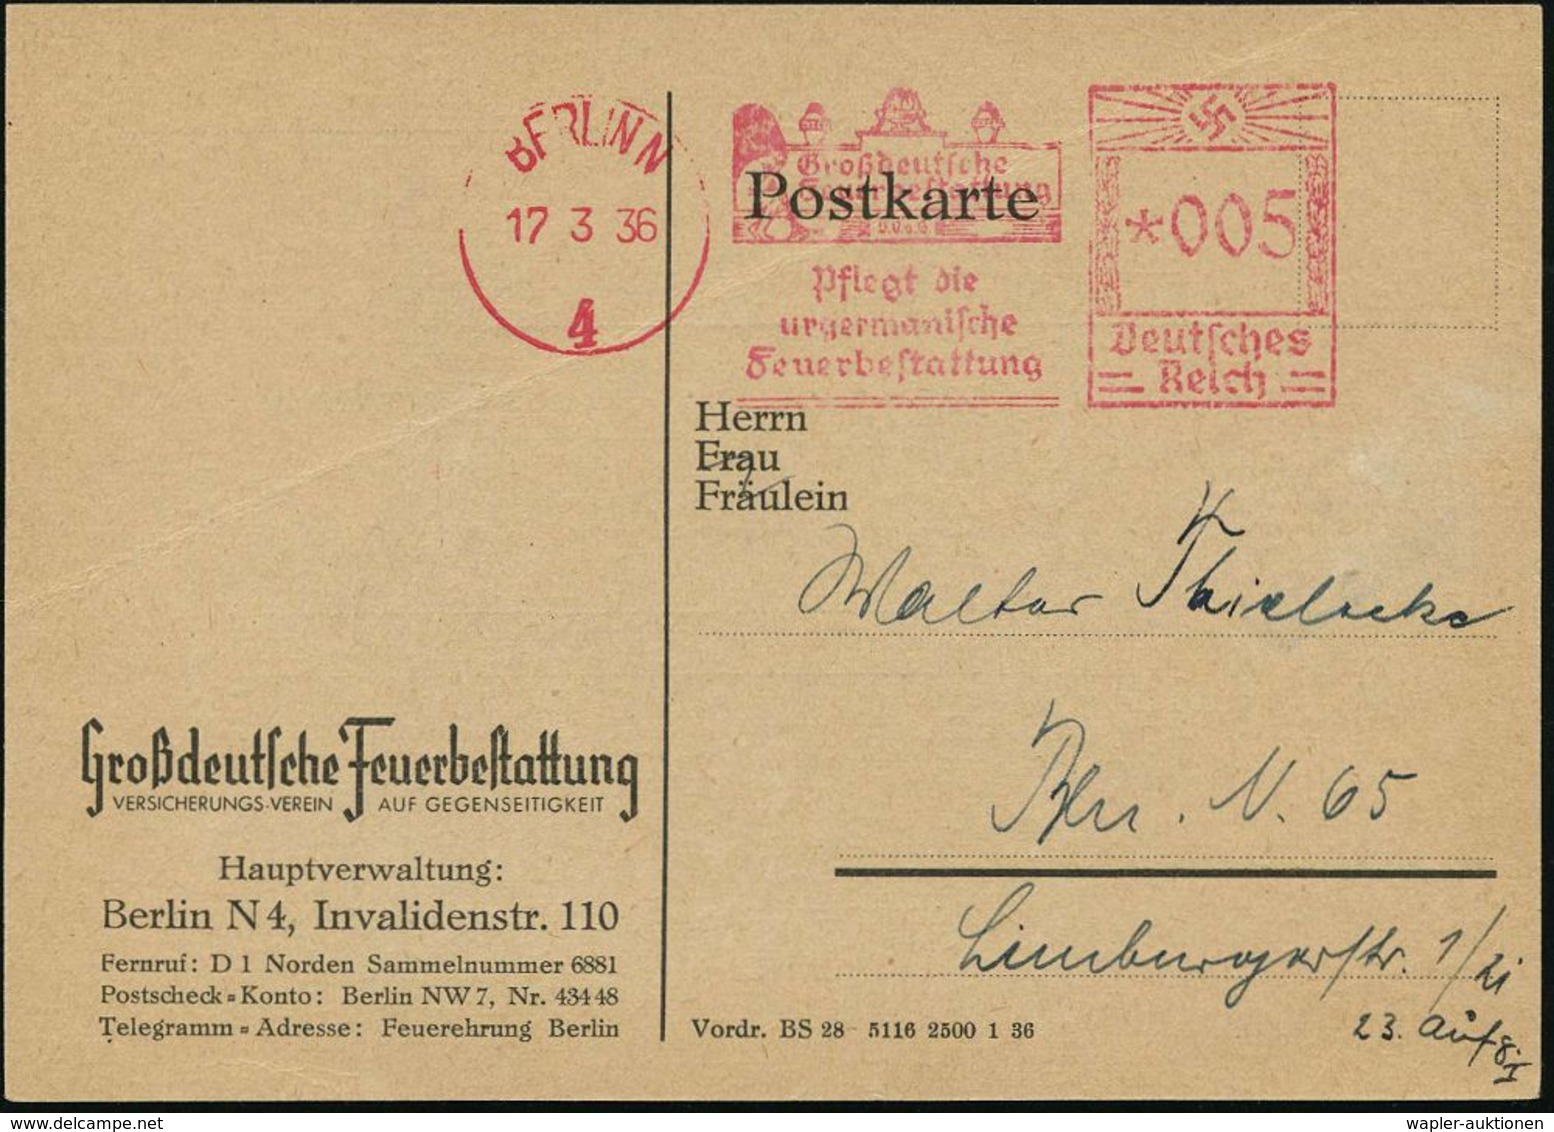 BERLIN/ 4/ Großdeutsche/ Feuerbestattung/ Pflegt Die / Urgermanische/ Feuerbestattung 1936 (17.3.) Dekorat. AFS (Trauend - Archeologie